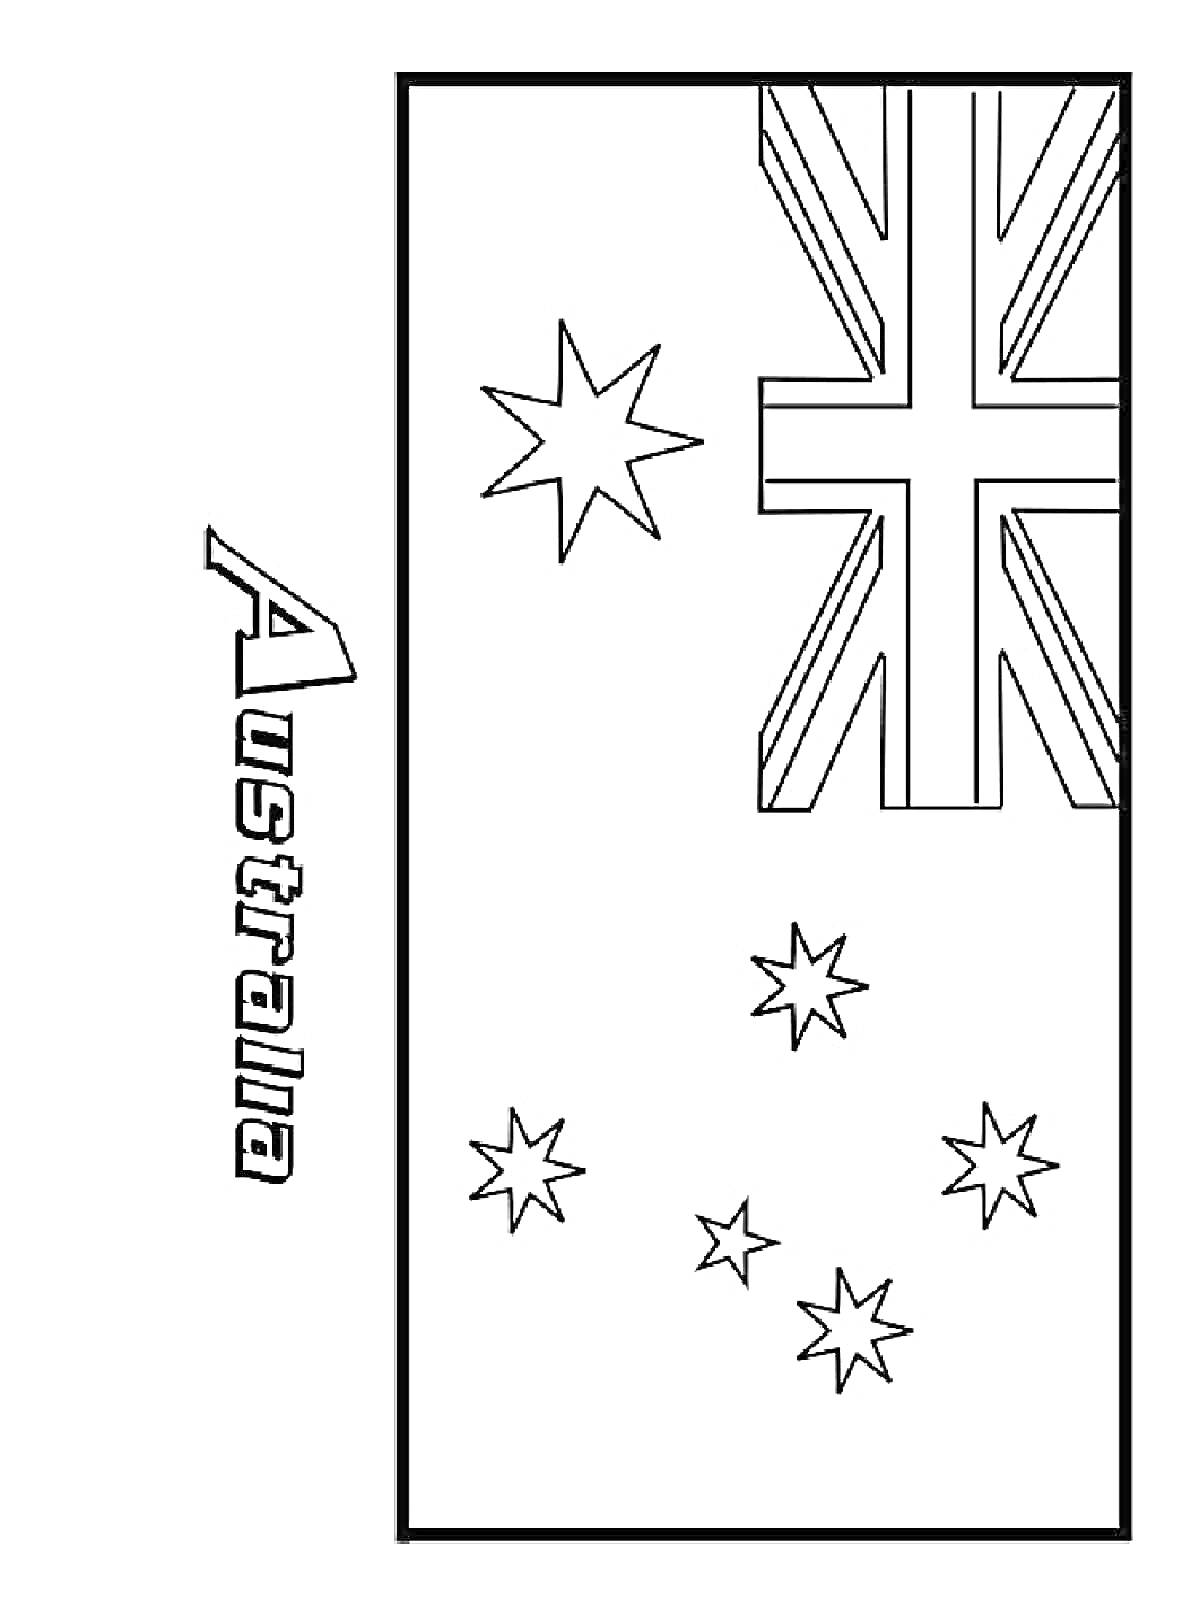 Раскраска Флаг Австралии с надписью Australia, изображены элементы британского флага в верхнем левом углу и шесть звезд – пять меньших и одна большая.